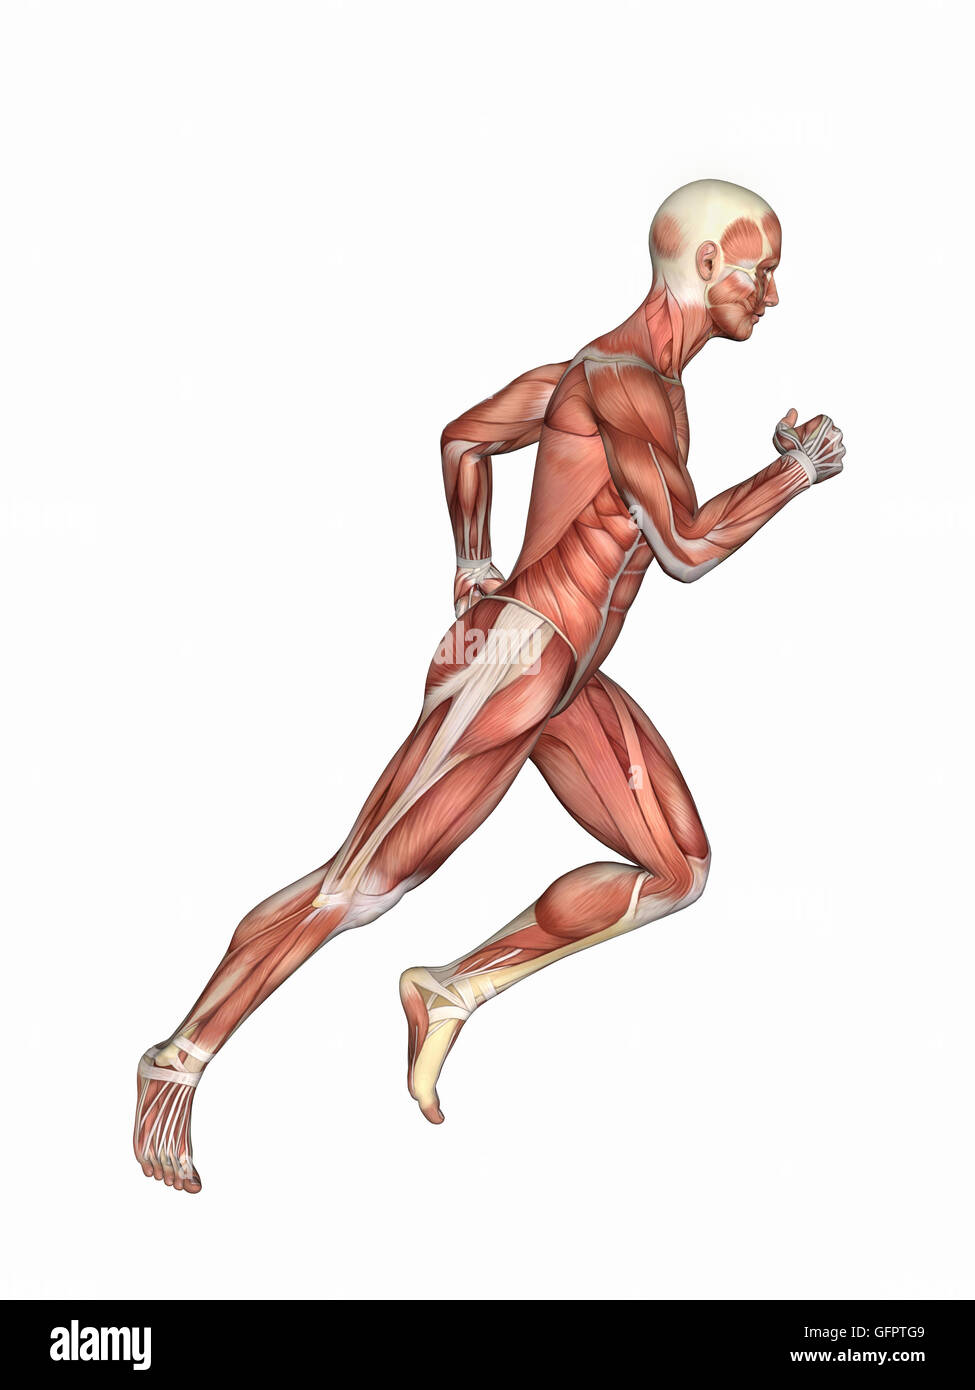 Anatomia del Maschio nel movimento di corsa: dotato di figura maschile in movimento di corsa con la presentazione di grandi gruppi muscolari come il muscolo deltoide Foto Stock